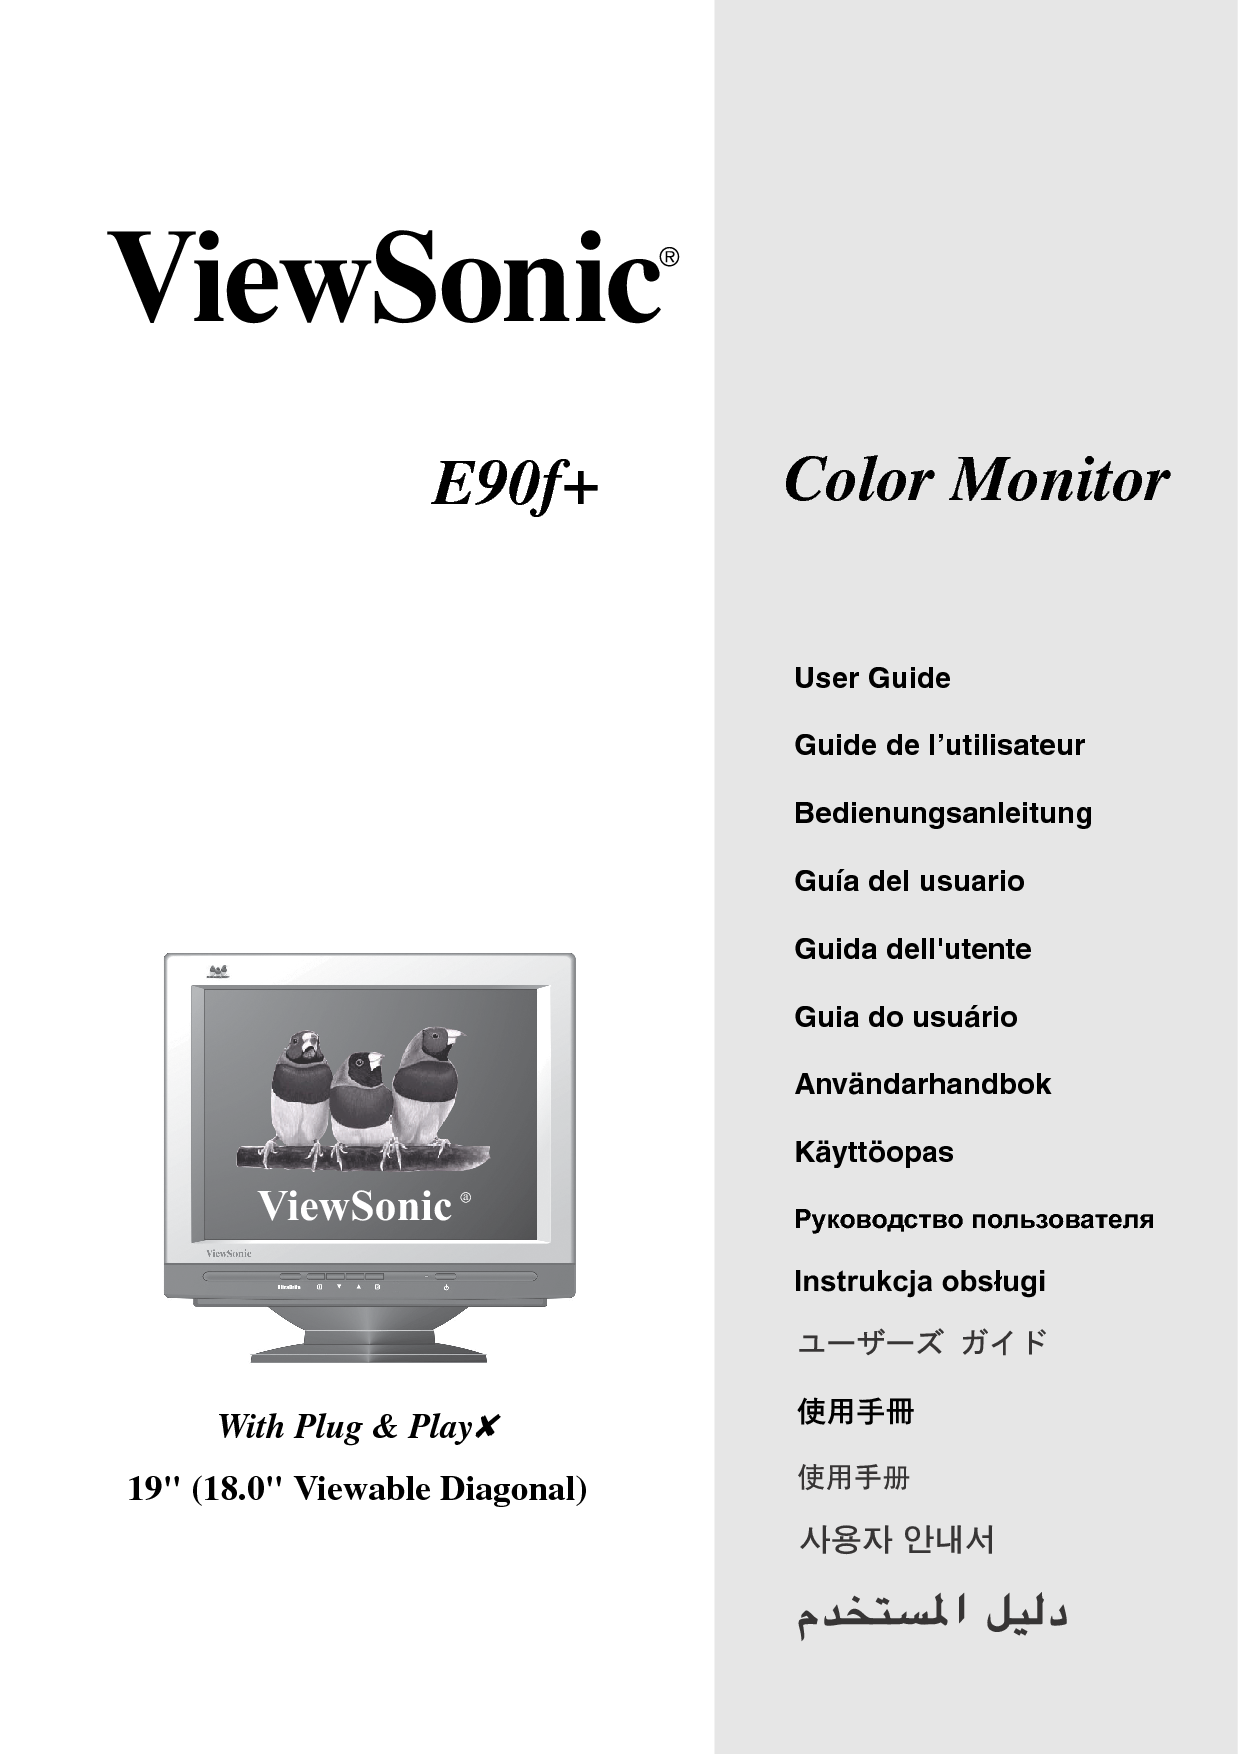 优派 ViewSonic E90F+ 用户手册 封面